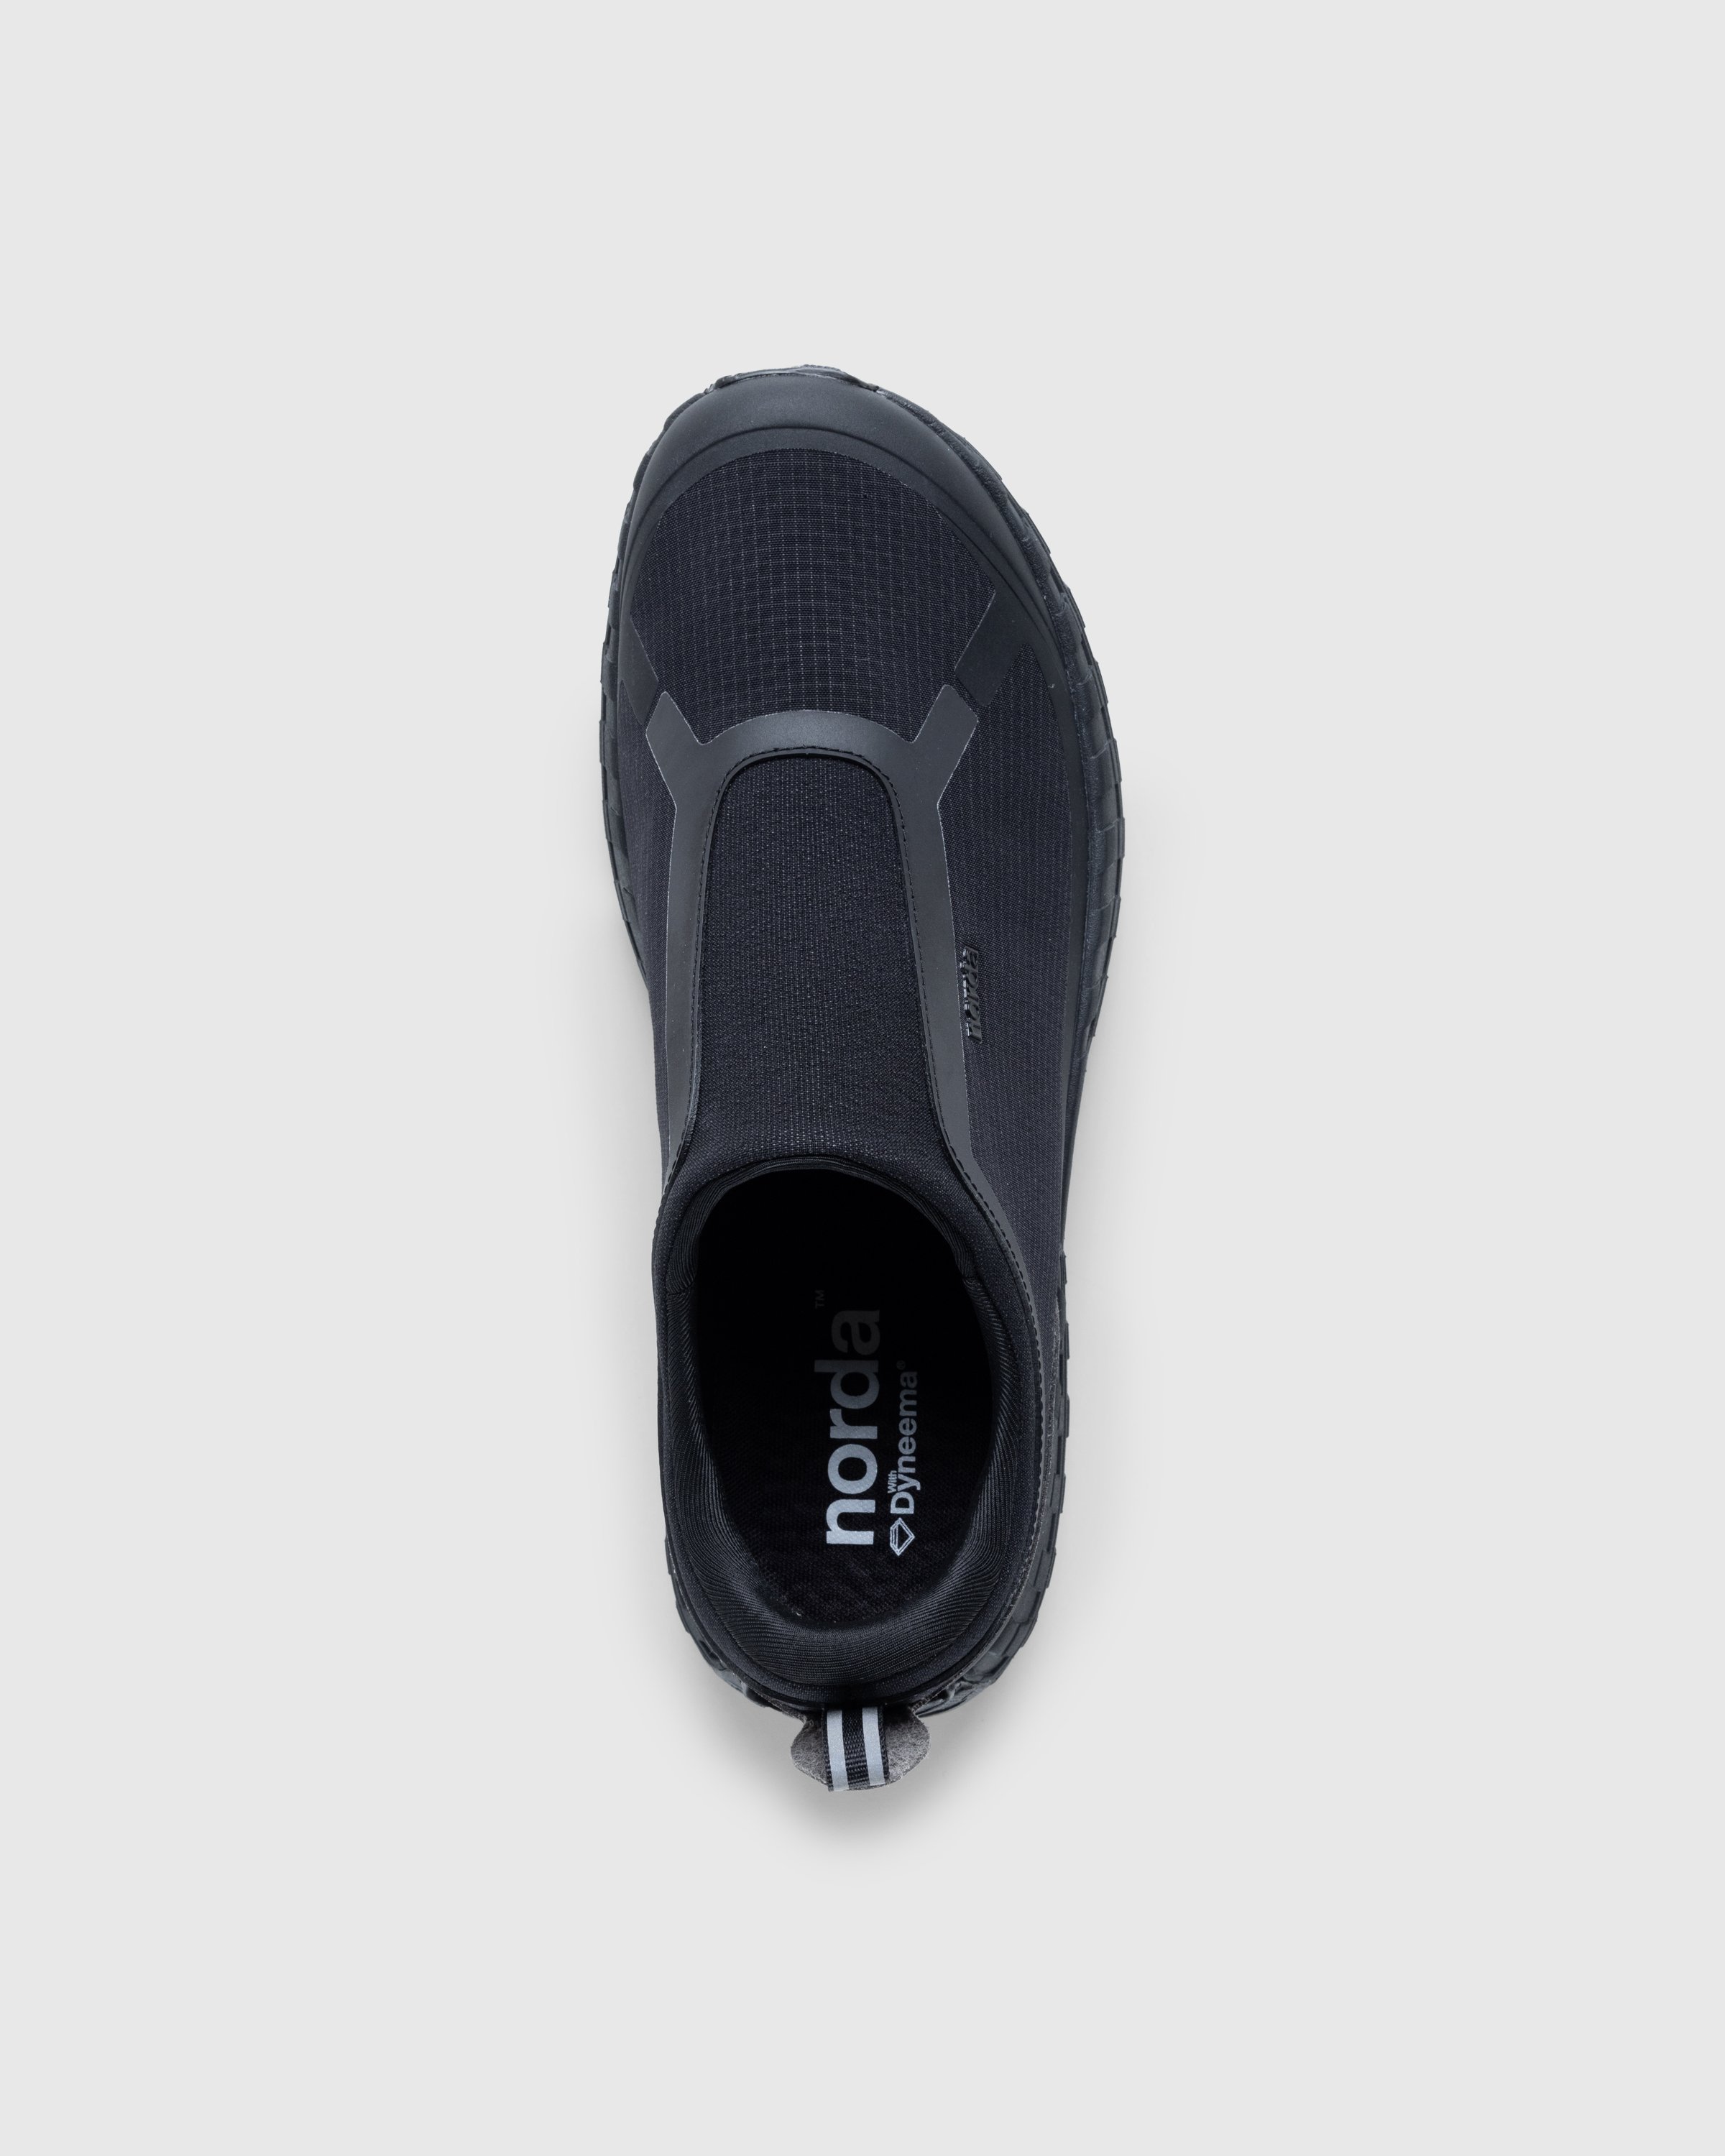 Norda - NORDA003-M - Footwear - Black - Image 5